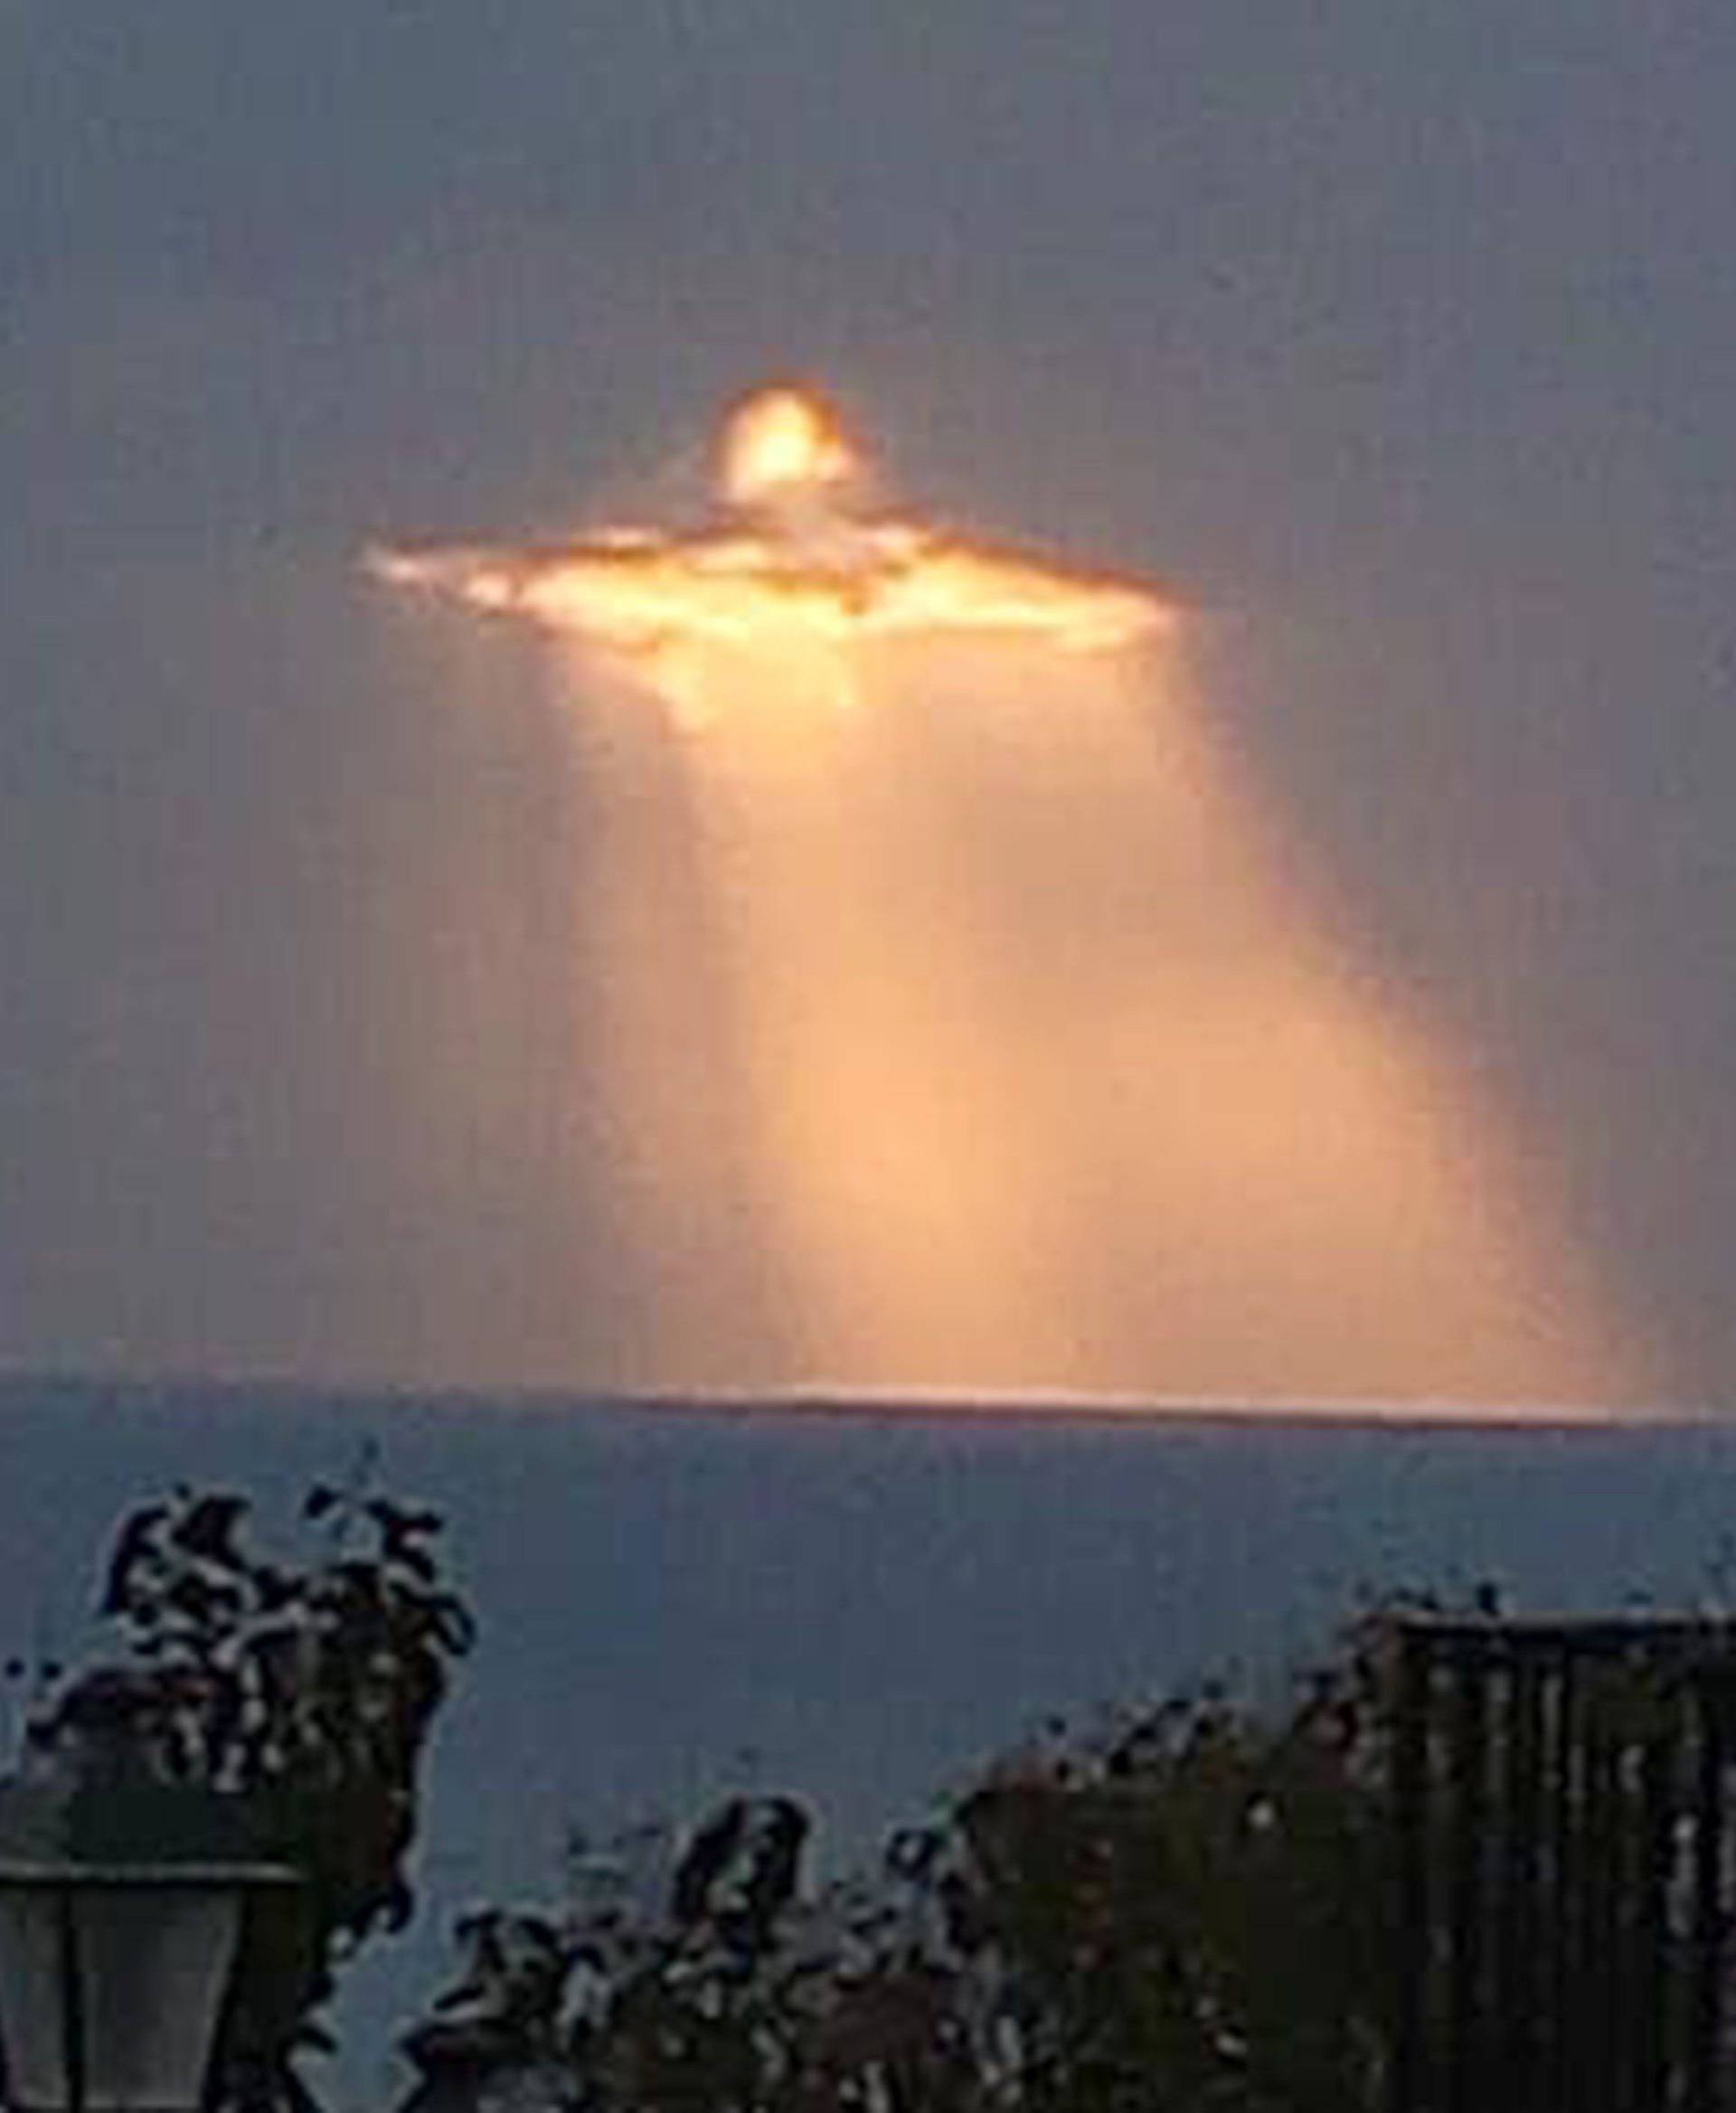 JESUS CHRIST IN THE SKY